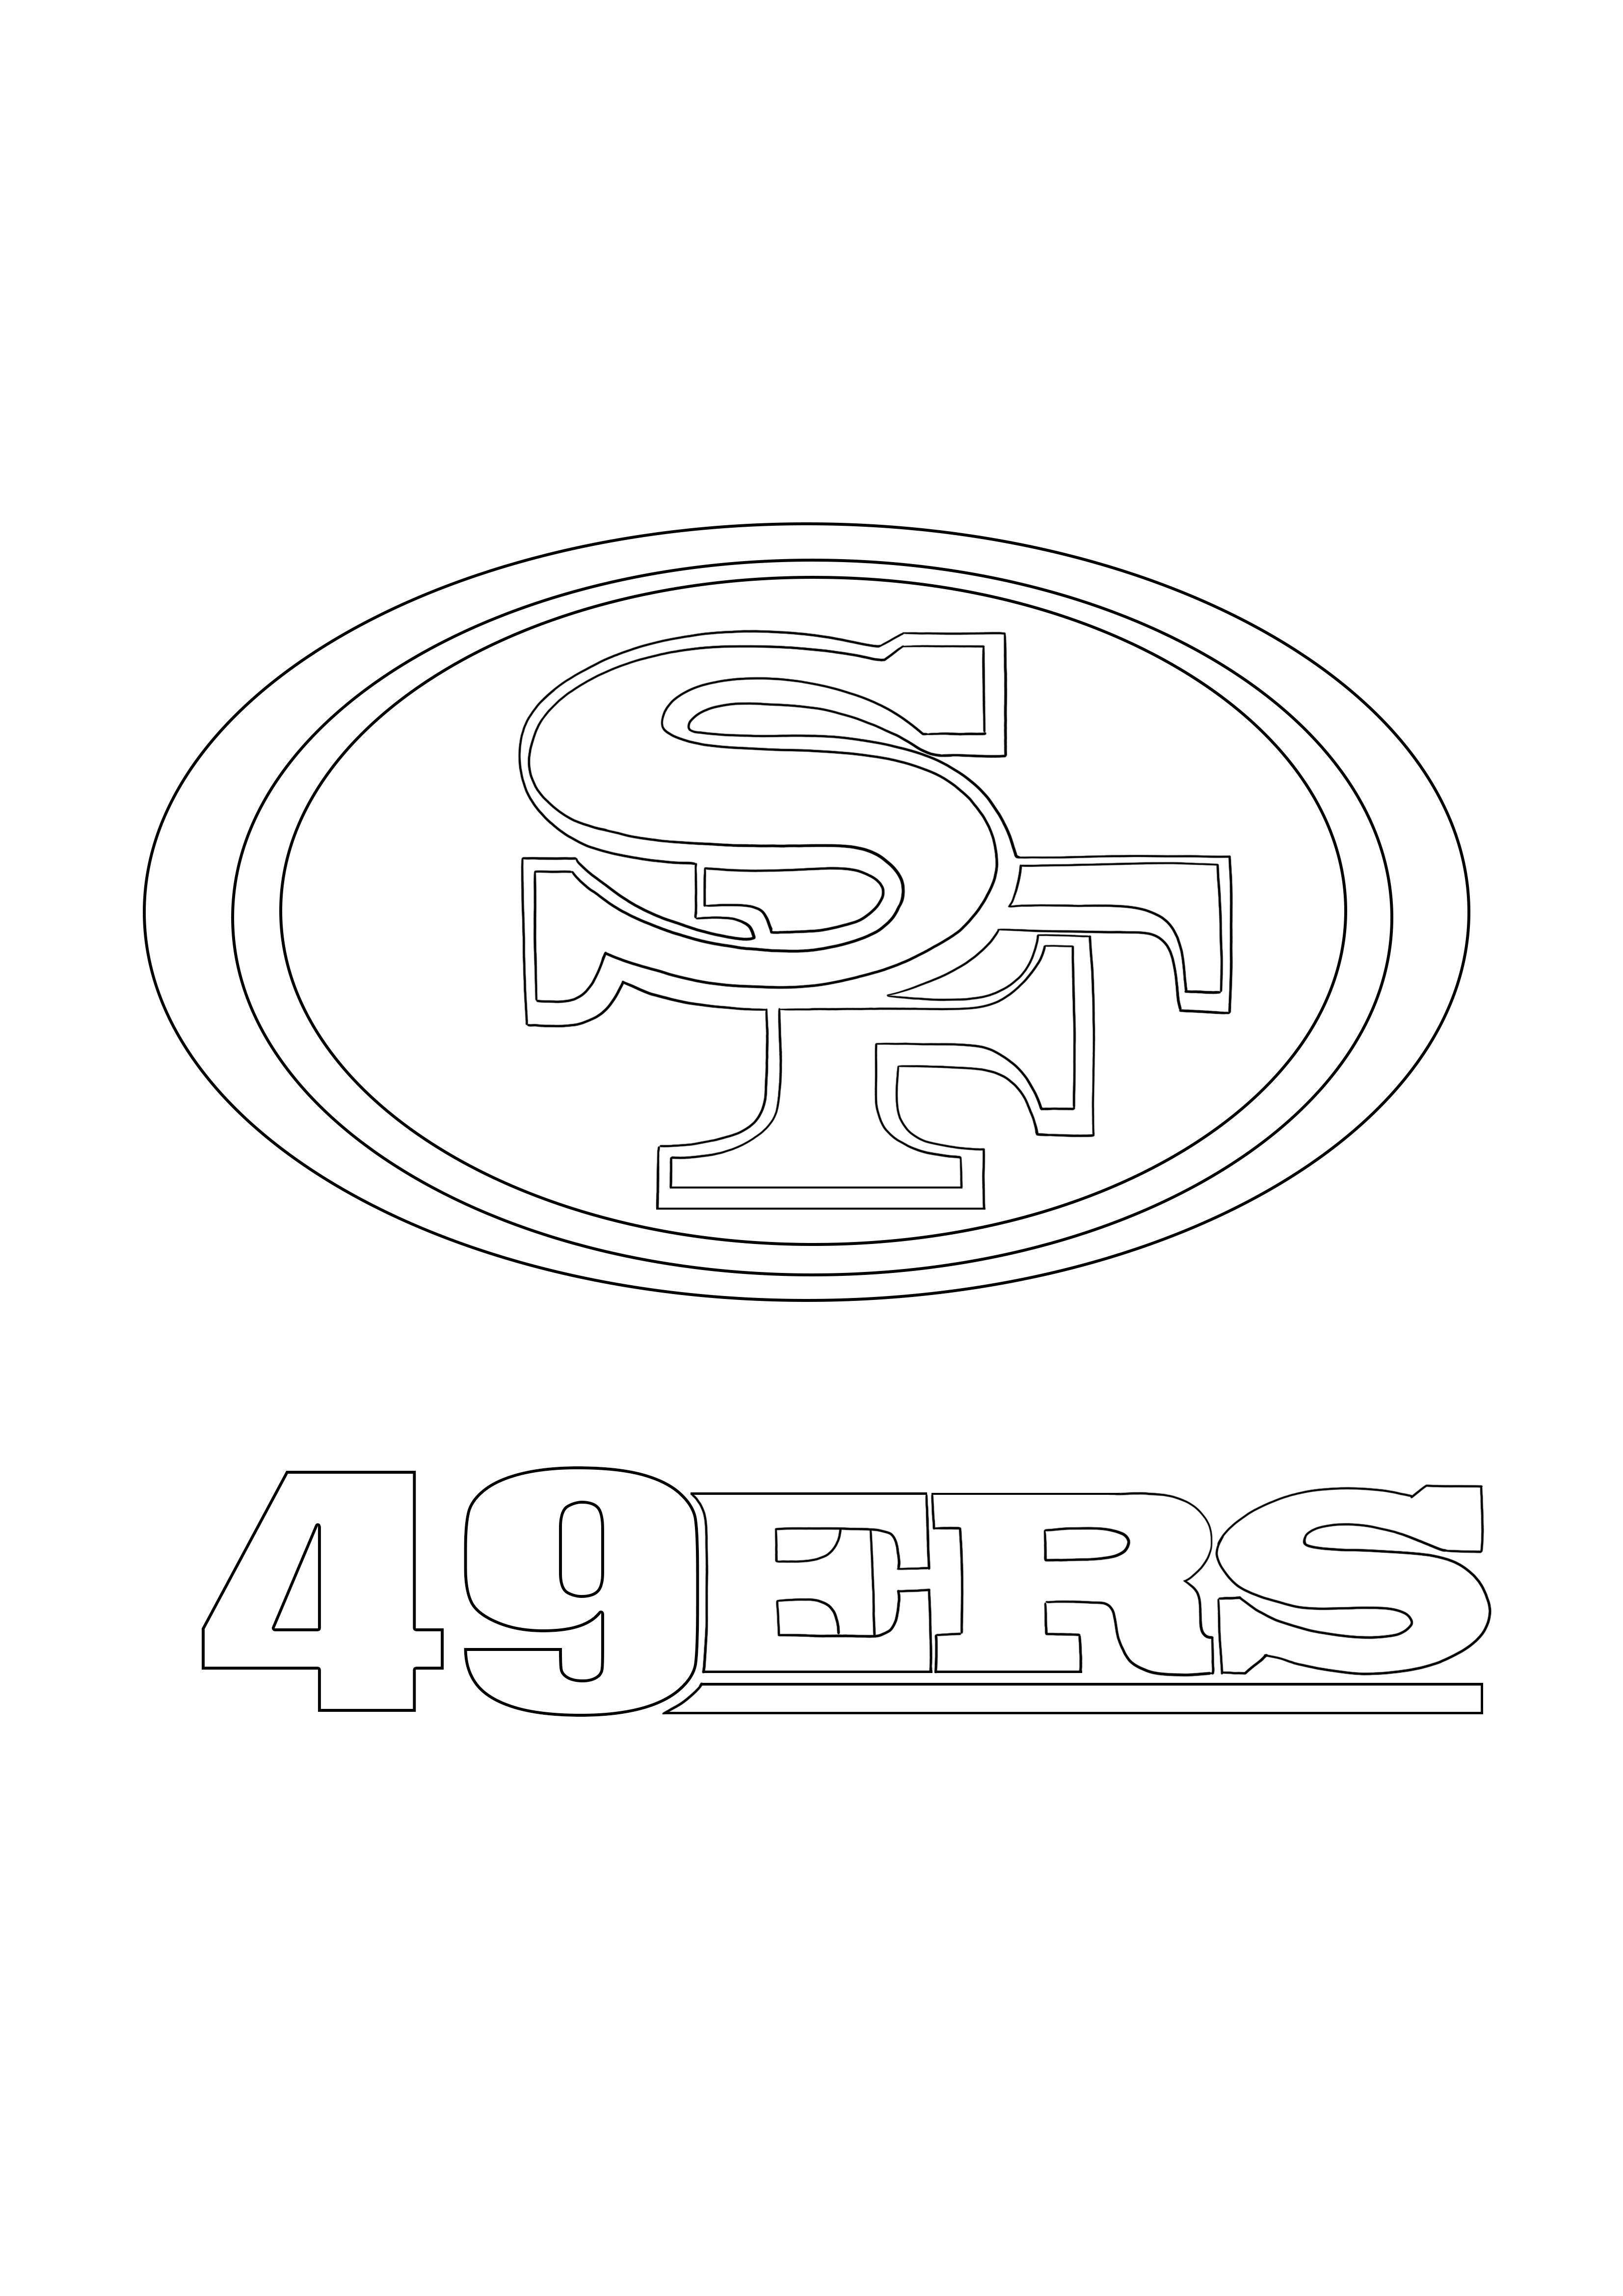 San Francisco 49ers Logo downloaden en kleuren voor gratis blad kleurplaat